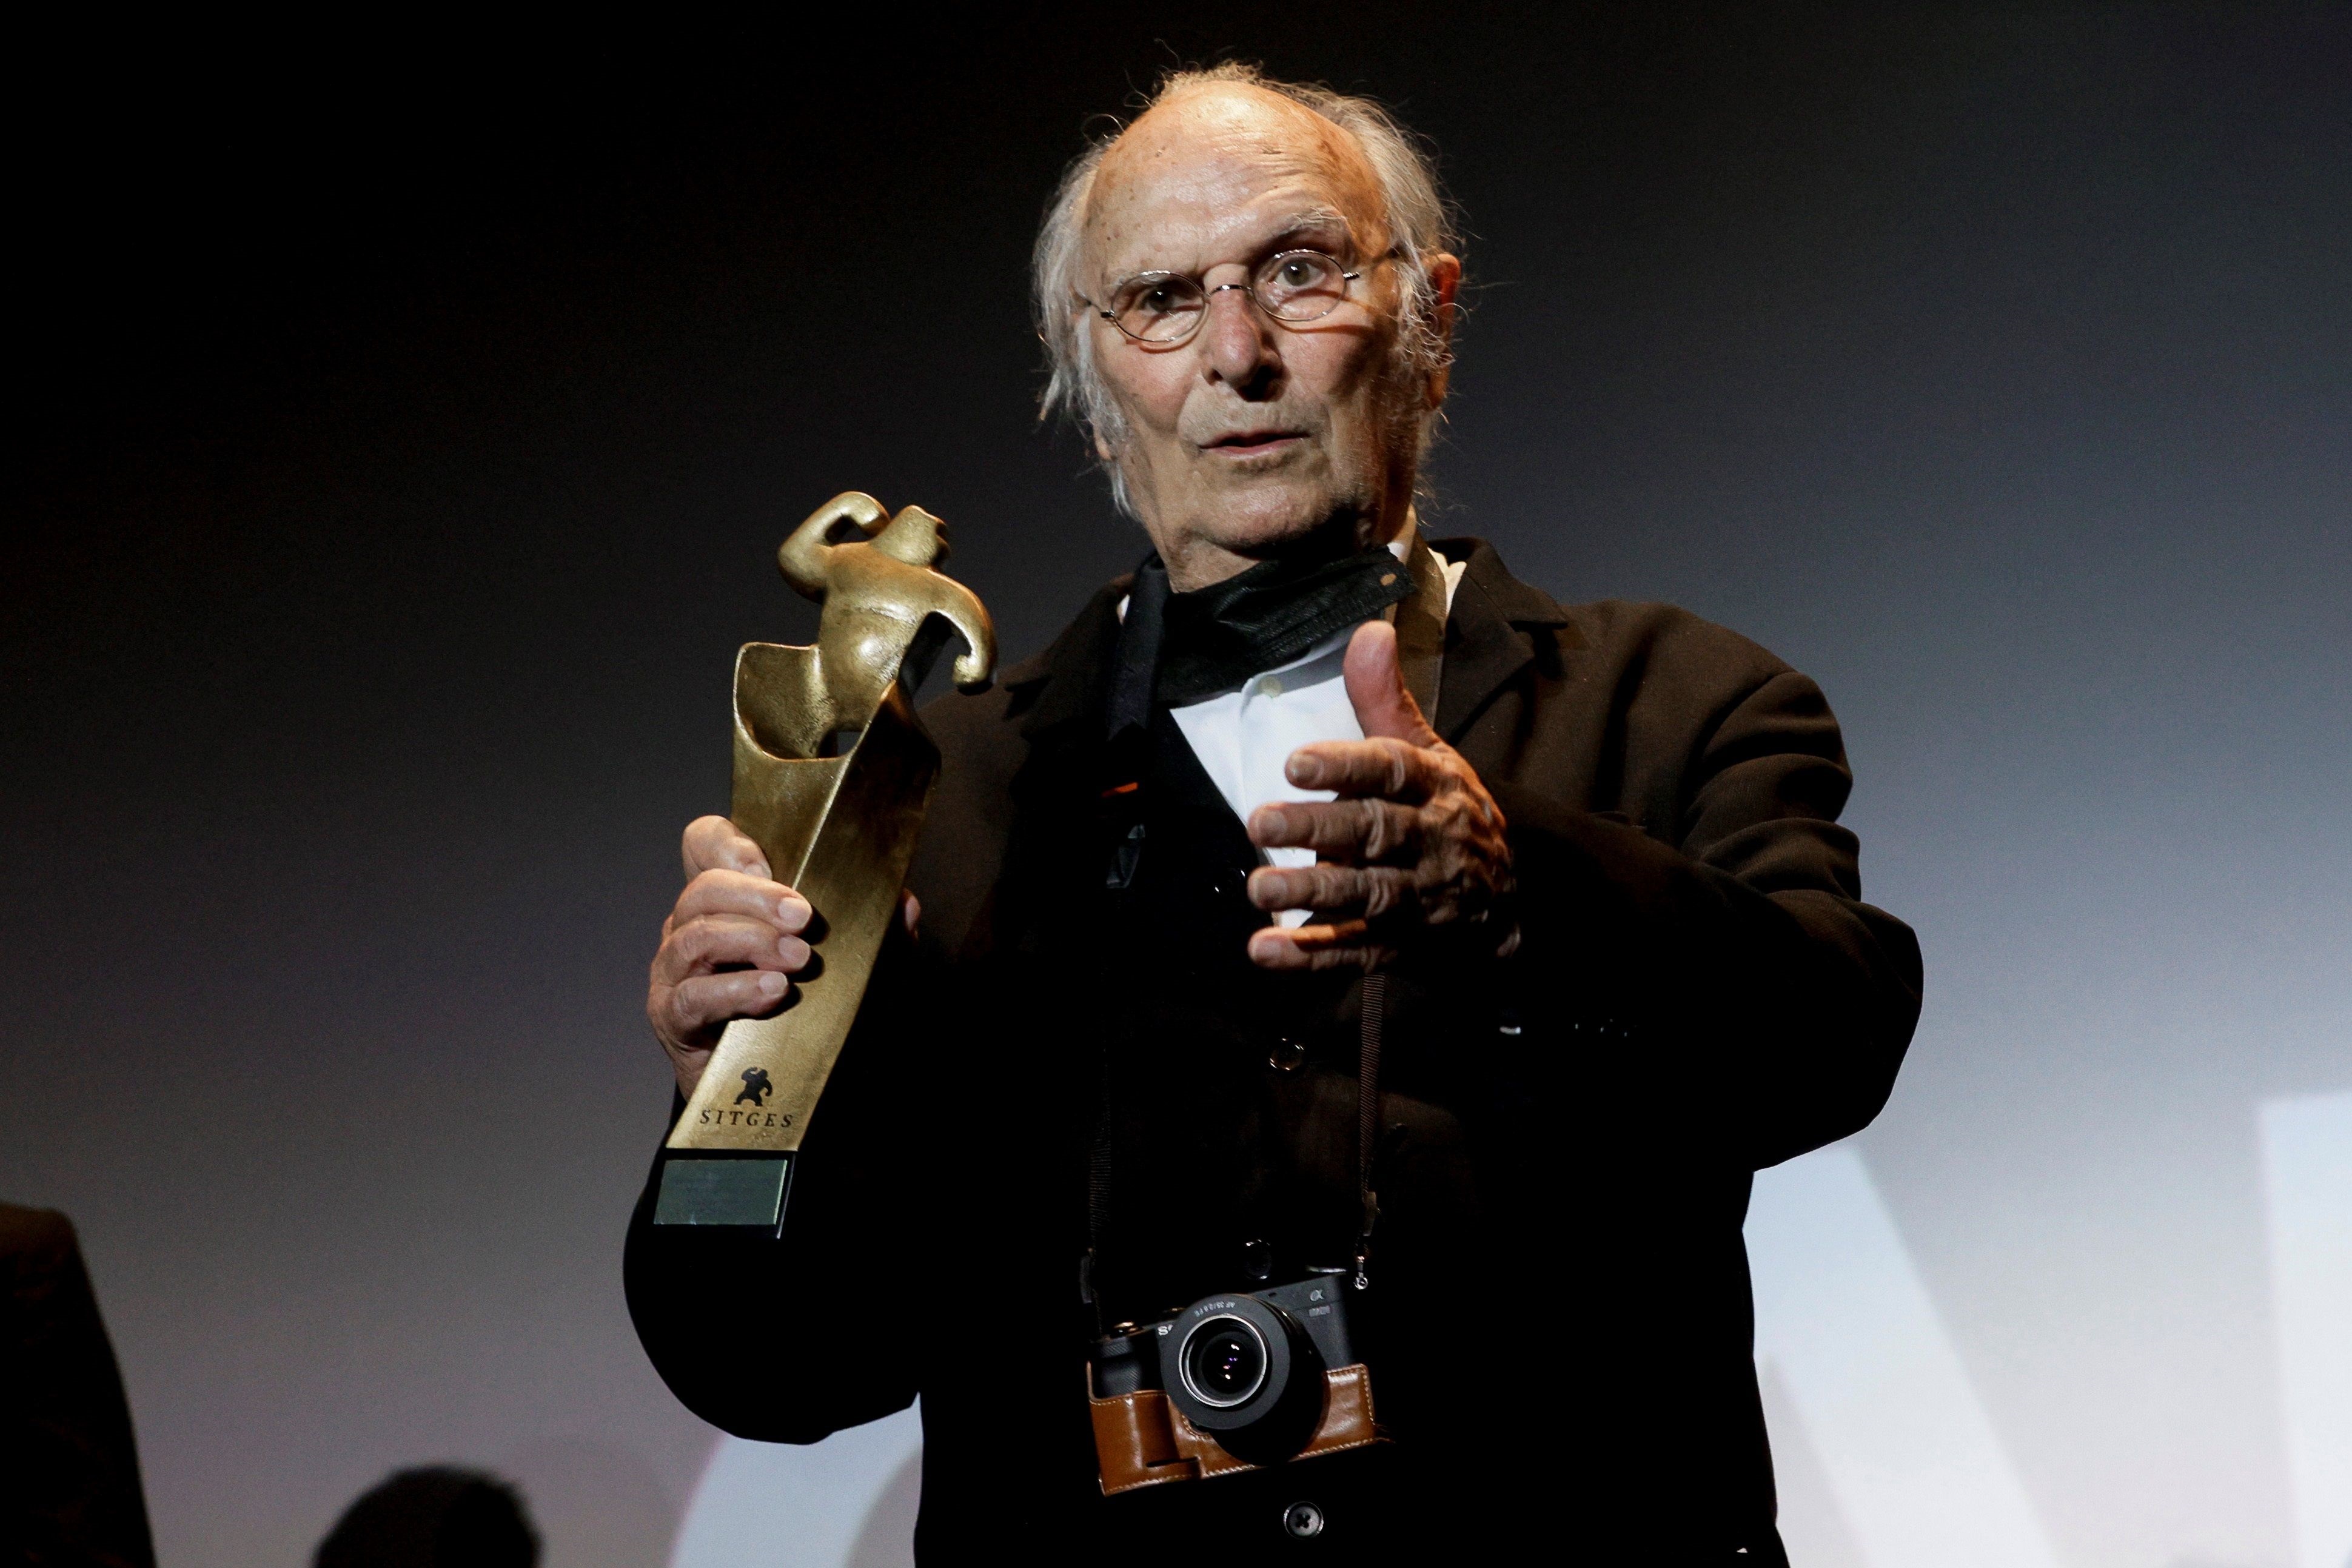 El director de cine, Carlos Saura, tras recibir el "Gran Premio Honorífico" del Festival de Cine Fantástico de Sitges, durante la gala de clausura  celebrada en la localidad catalana. EFE/Quique Garcia.
